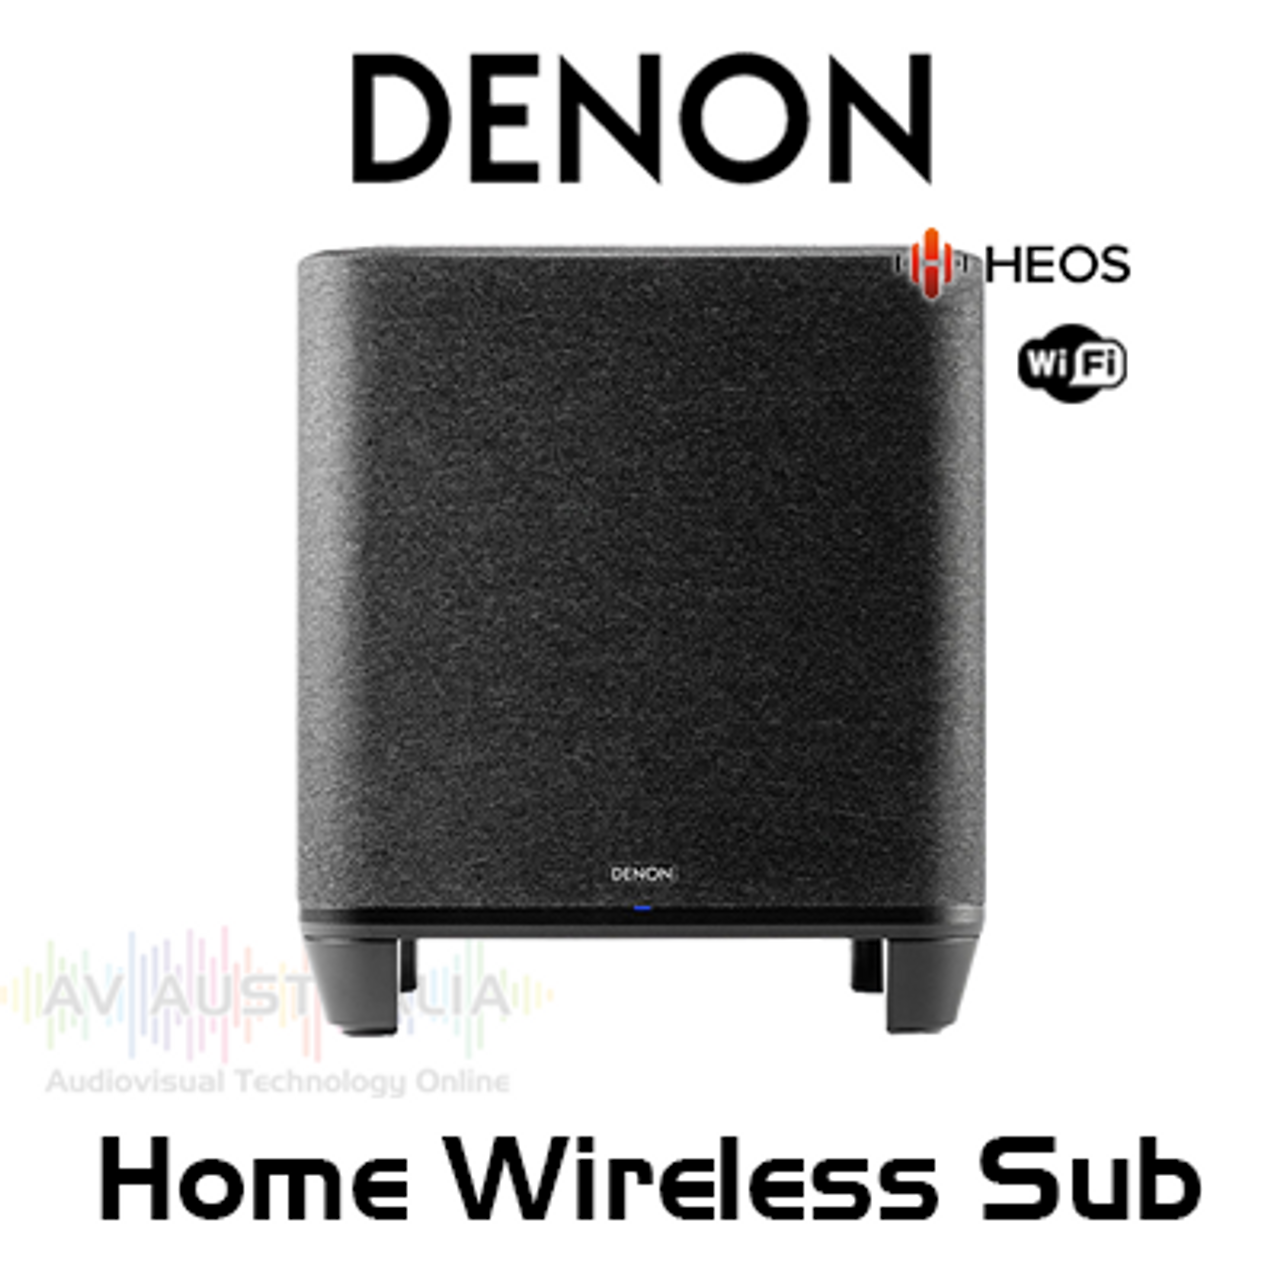 Subwoofer Denon | Wireless Home Australia Built-in HEOS AV Online with